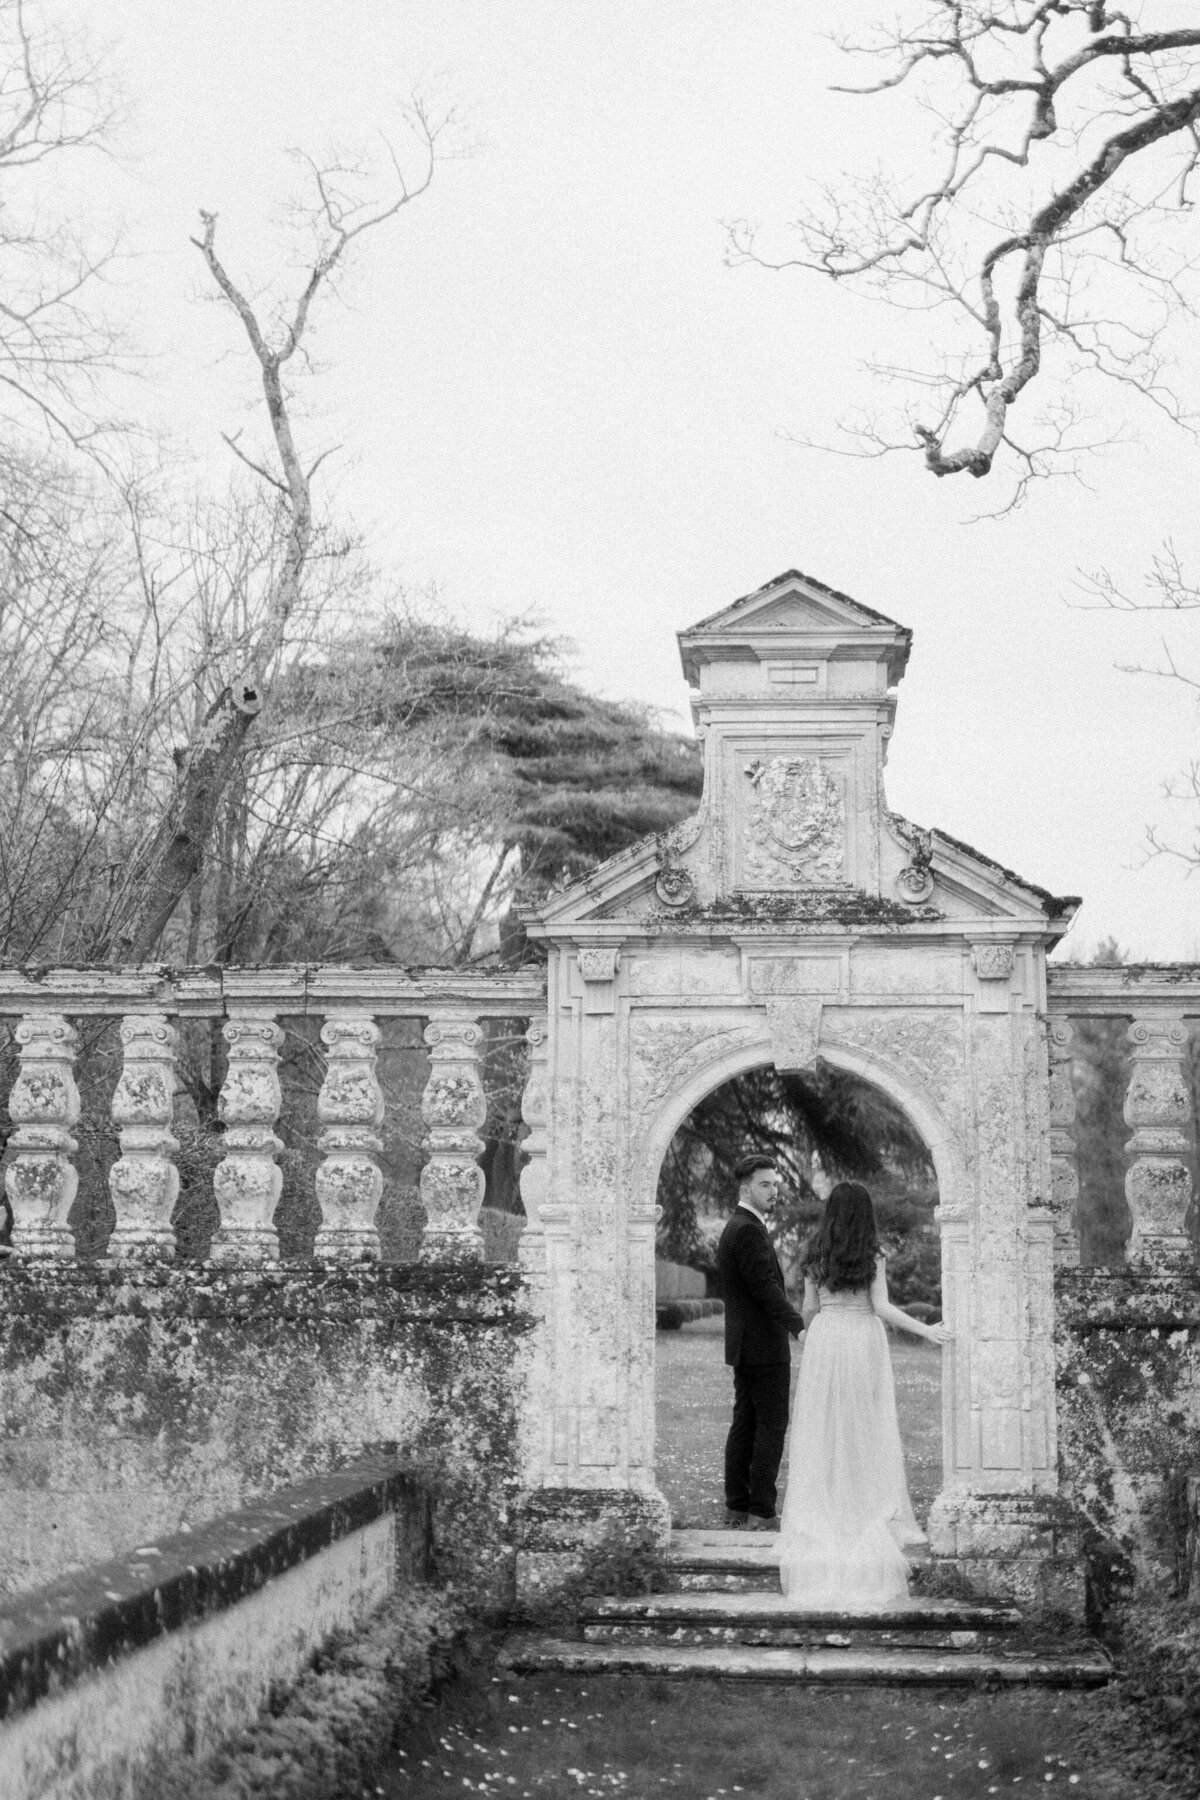 060-Chateau-de-la-Bourdaisiere-Destination-Wedding-Elopement-Photographer-Paris-Cinematic-Editorial-Luxury-Fine-Art-Lisa-Vigliotta-Photography